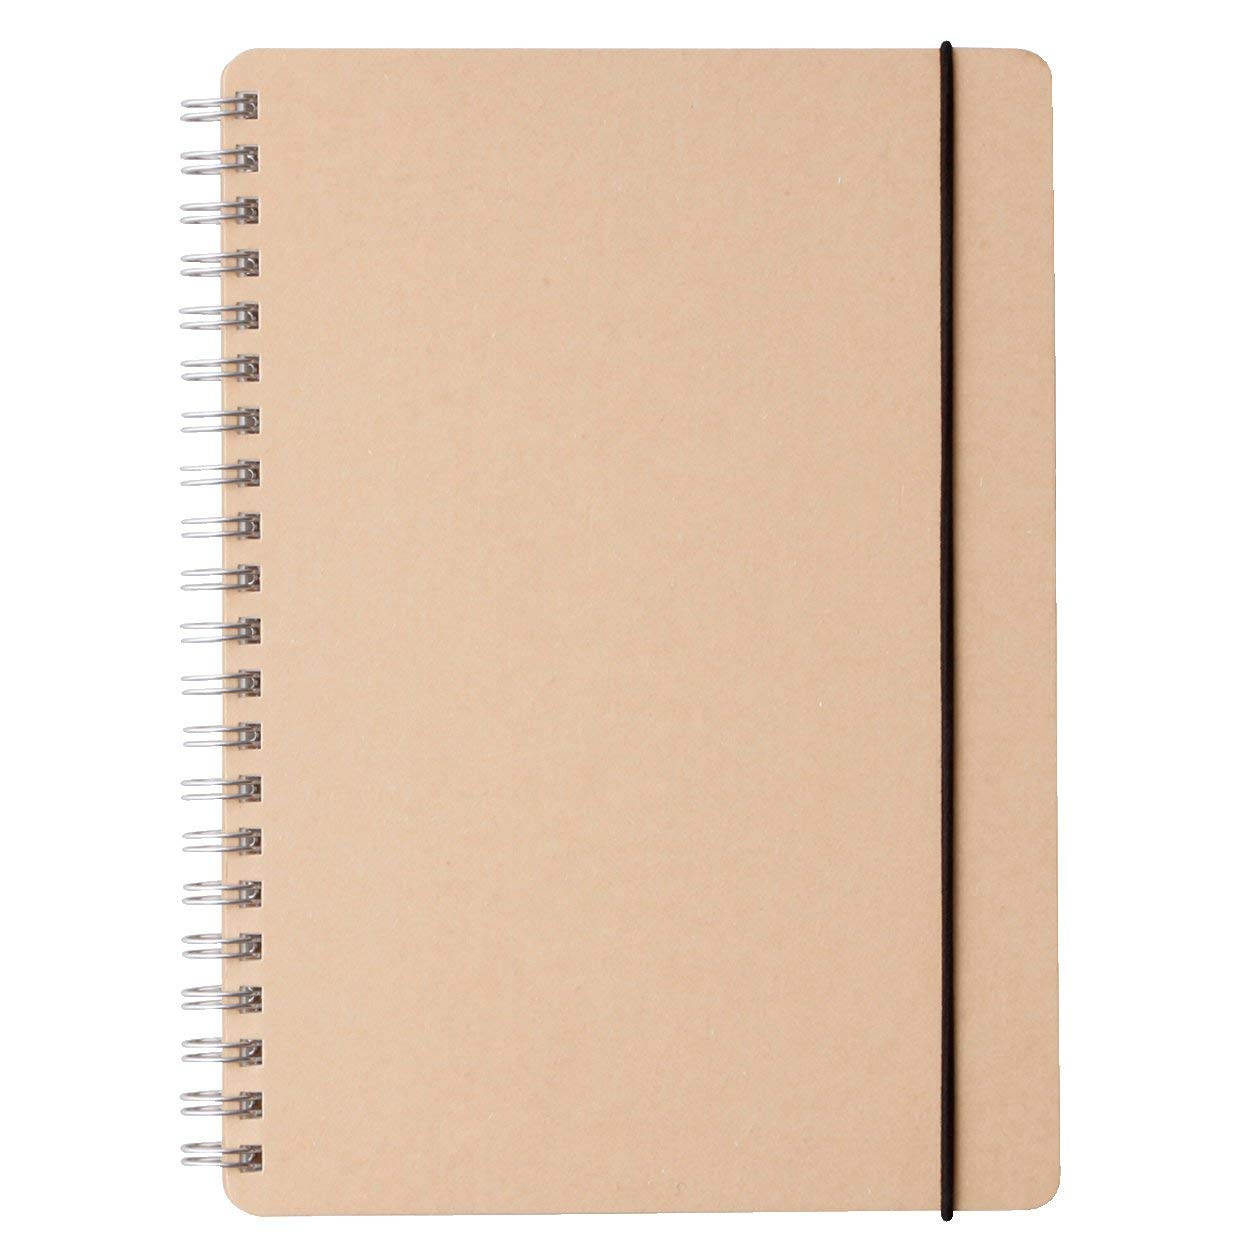 Muji Dot Grid Notebook